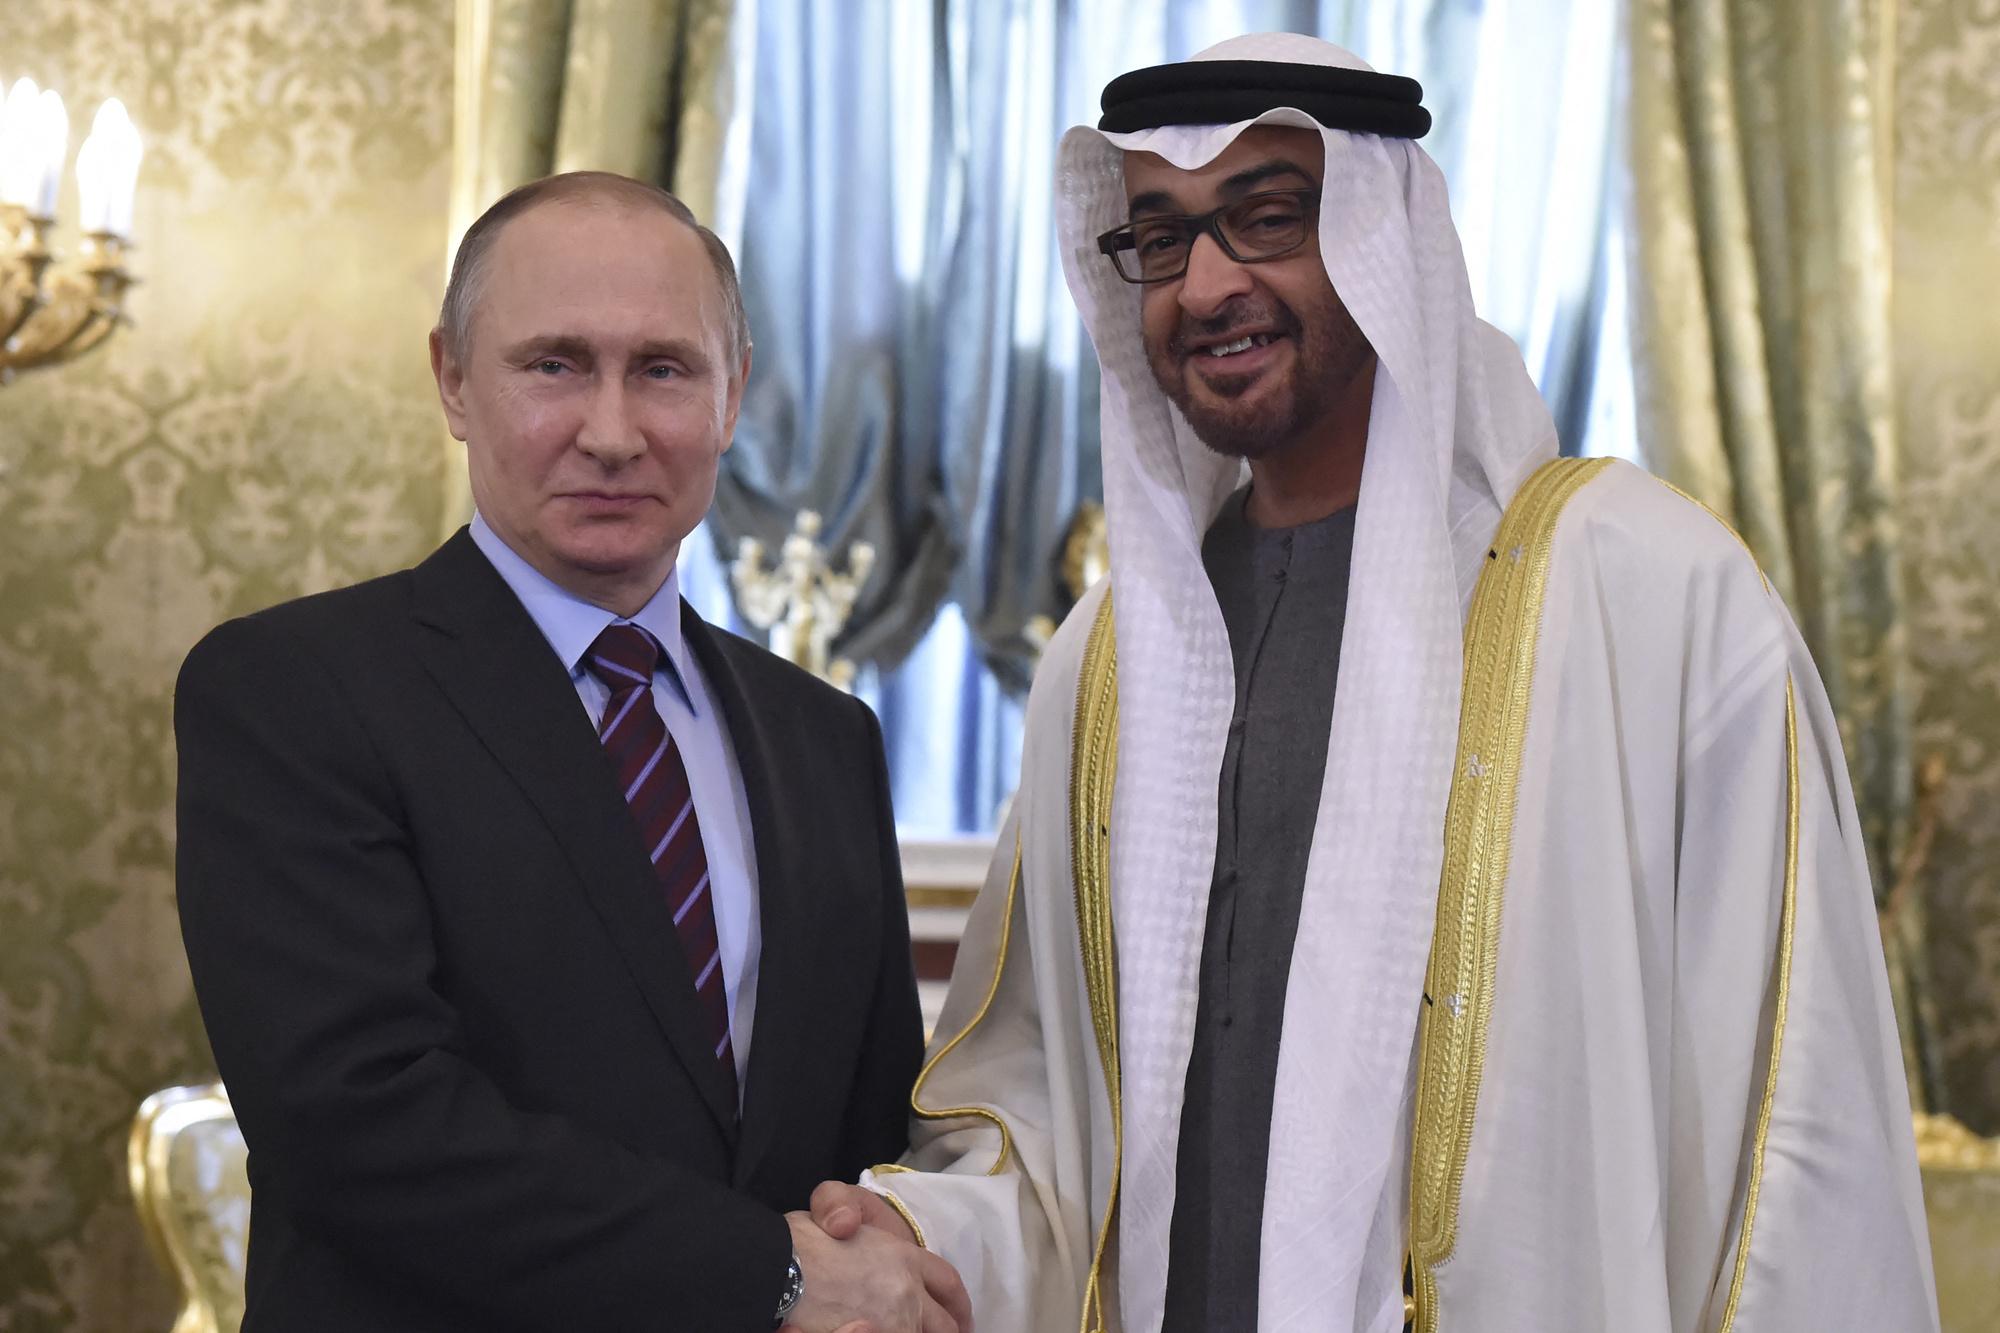 Vladimir Poetin en Mohammed Bin Zayed tijdens een ontmoeting op het Kremlin in 2017